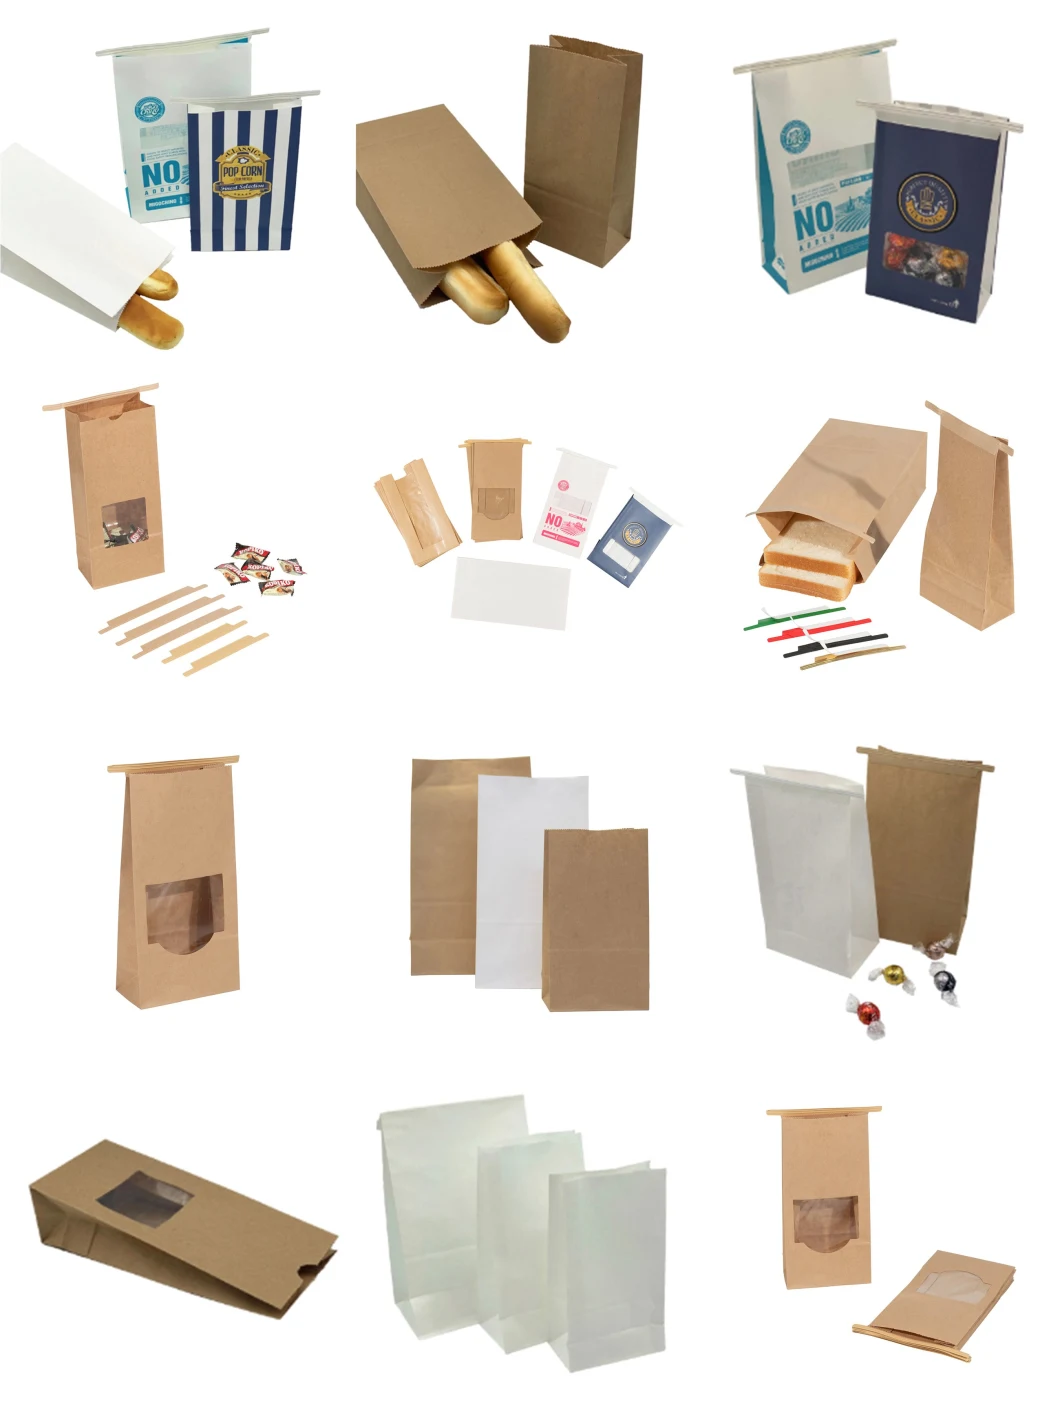 Custom Logo Kraft Paper Bags for Bread Coffee Nuts Packaging